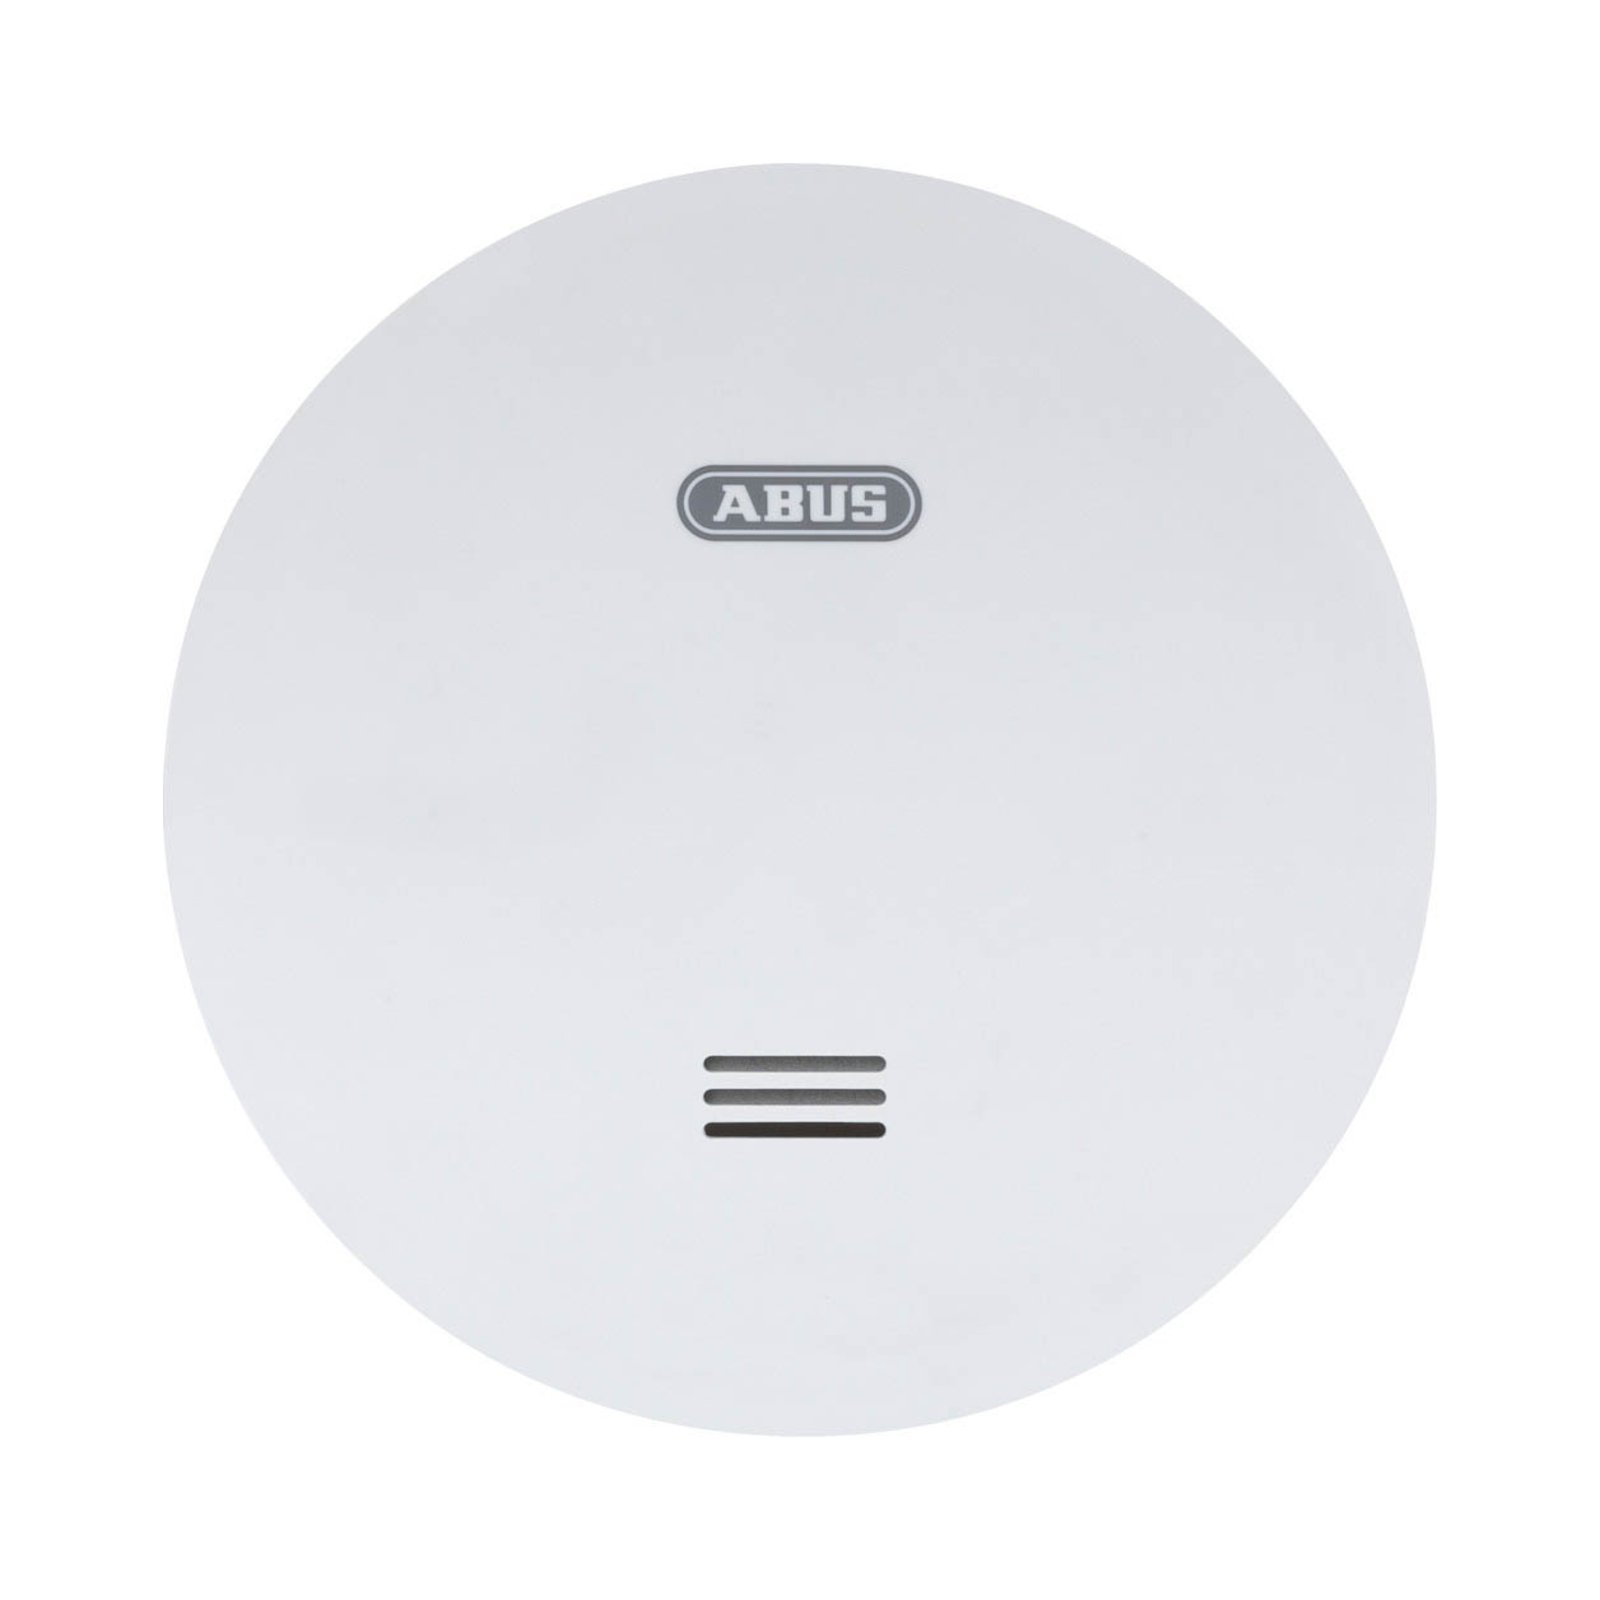 ABUS RWM160 Rauchwarnmelder, weiß, Ø 11,5 cm